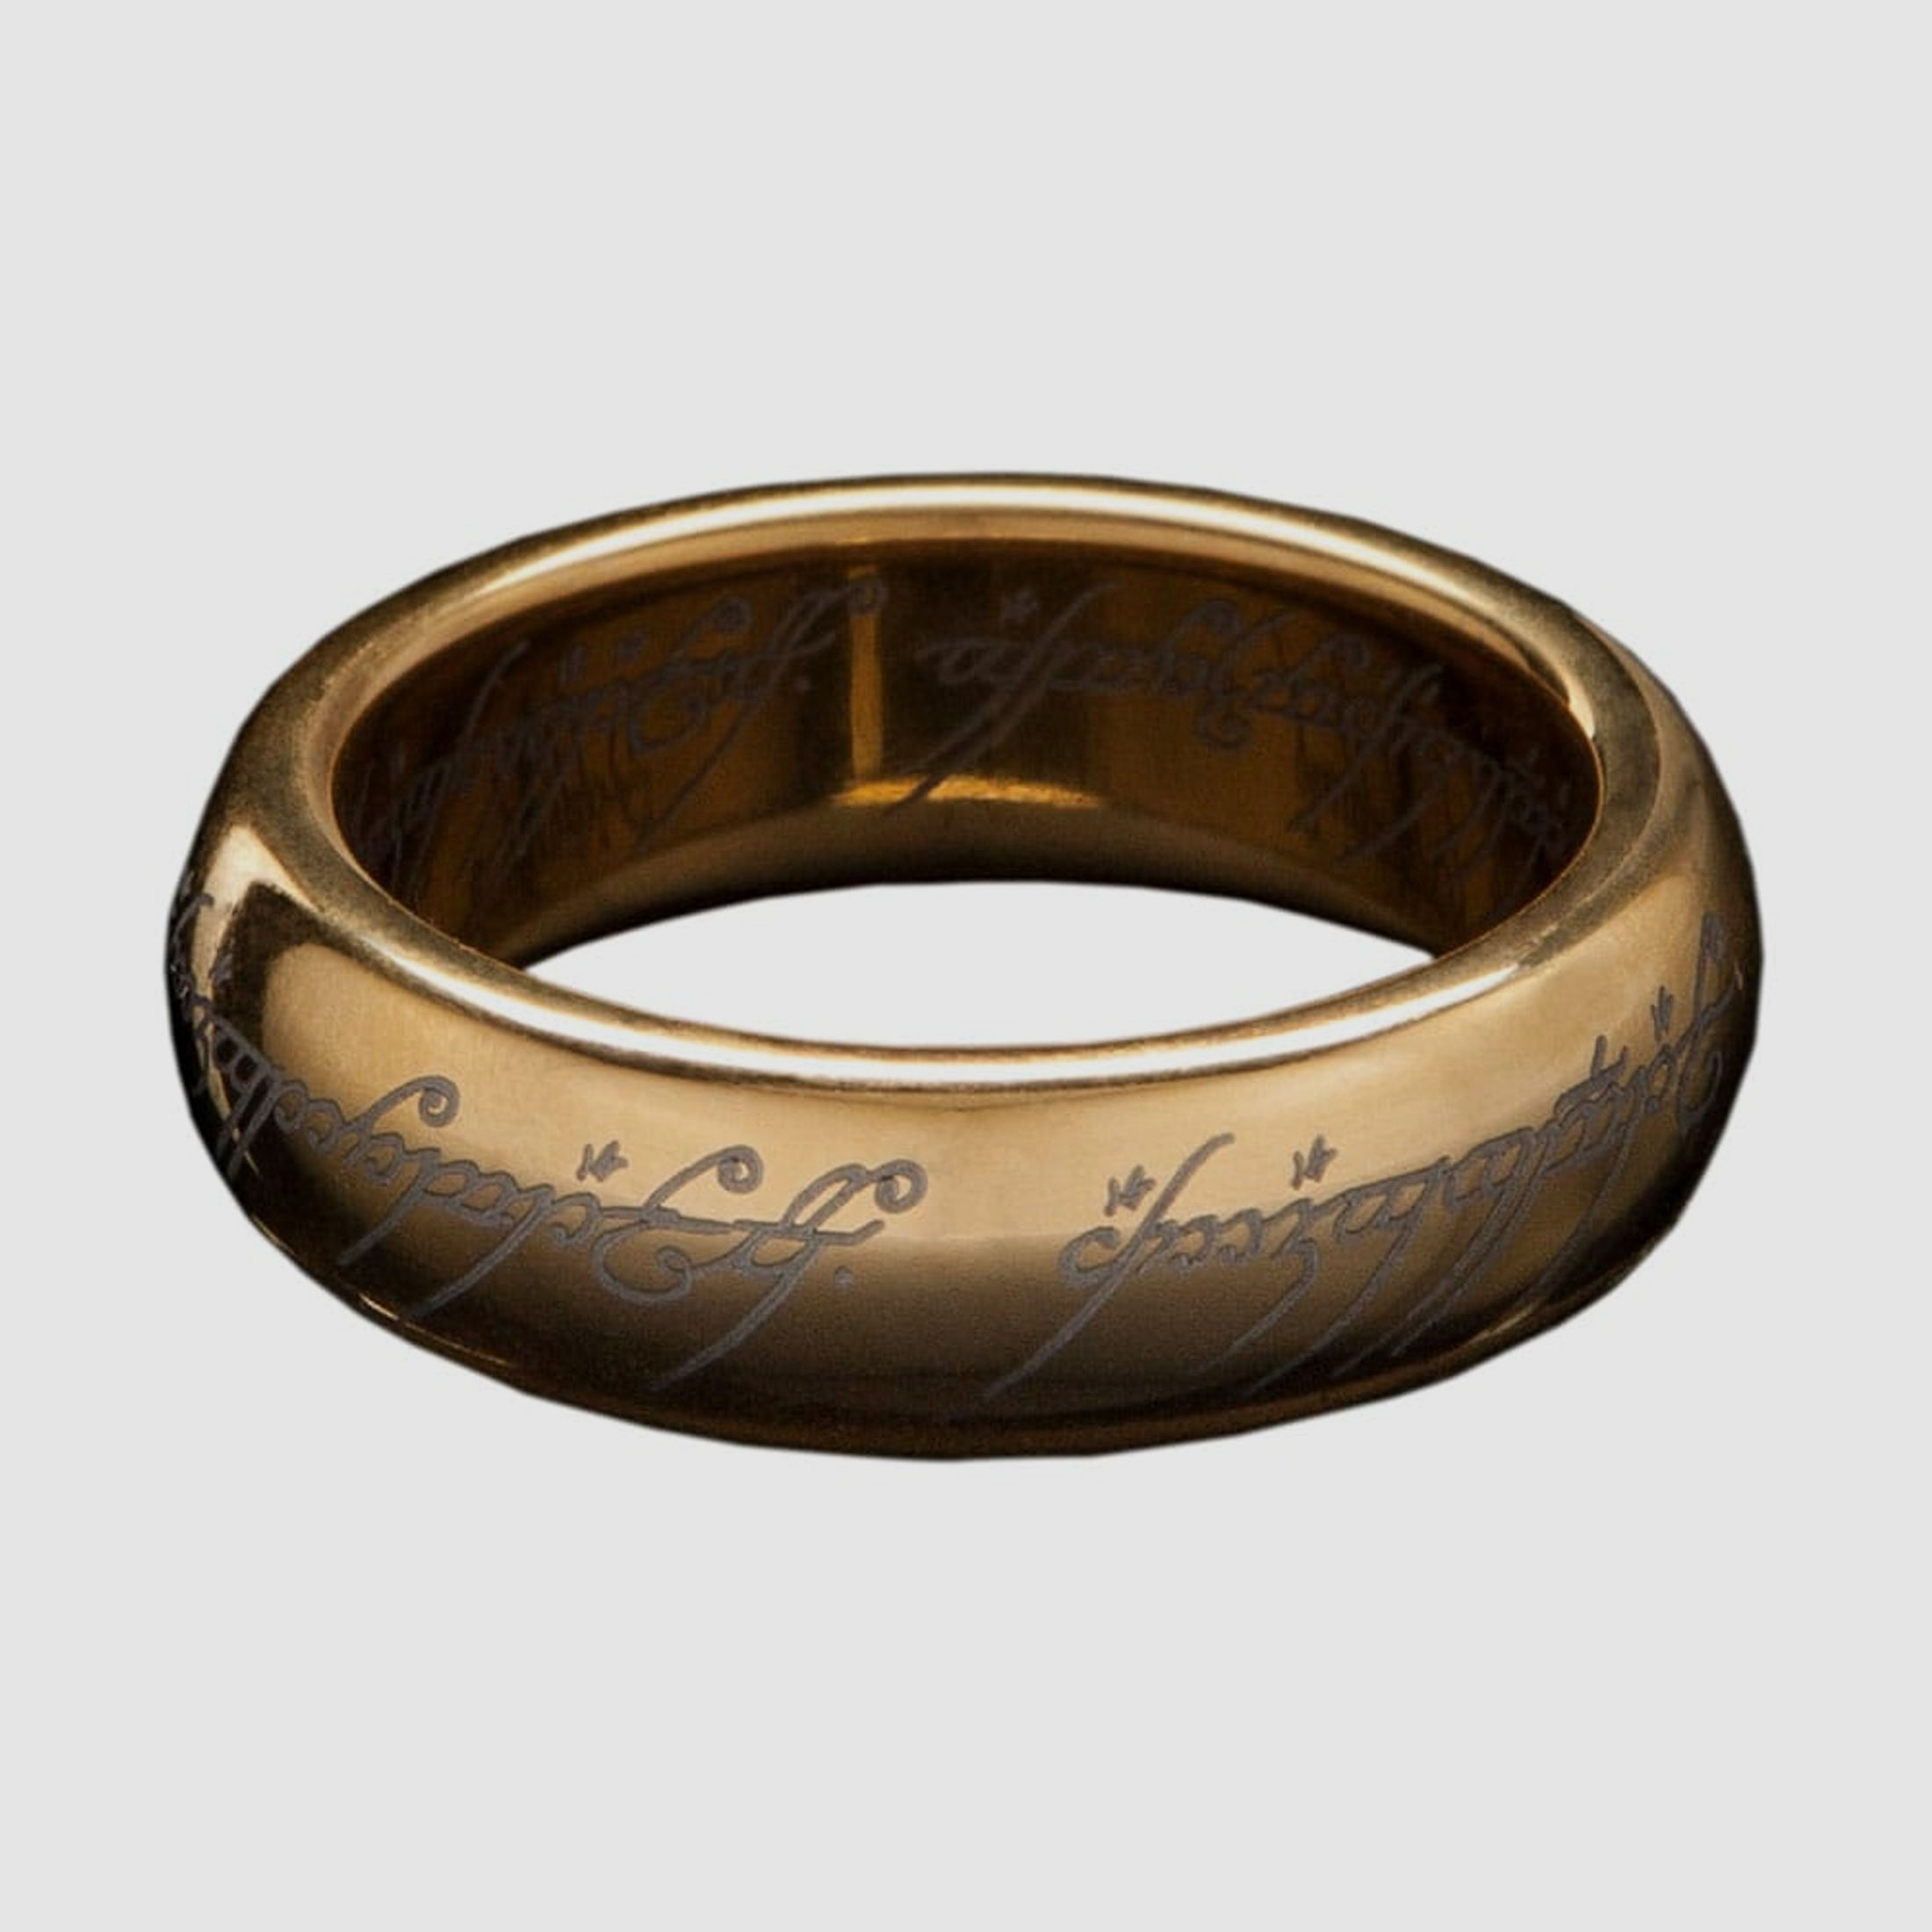 Herr der Ringe Wolfram-Ring Der Eine Ring (vergoldet) Größe 8 | 42781